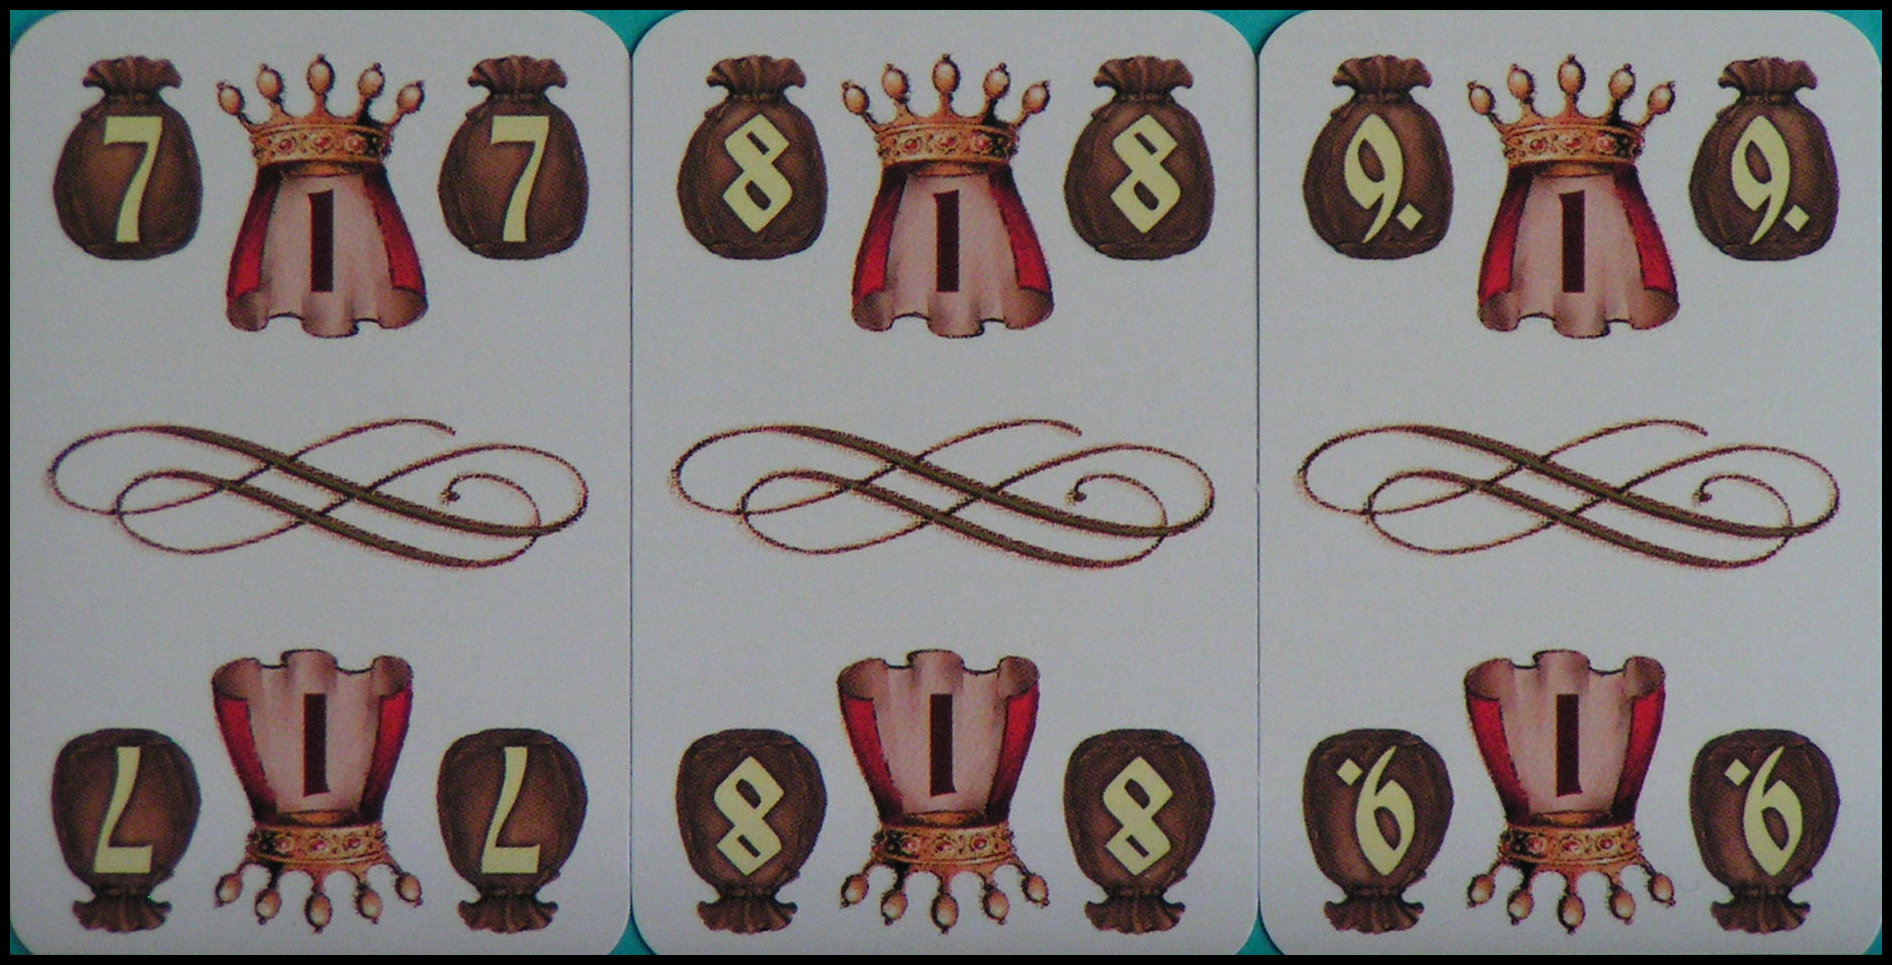 Pizzaro - Money Cards, 7 to 9